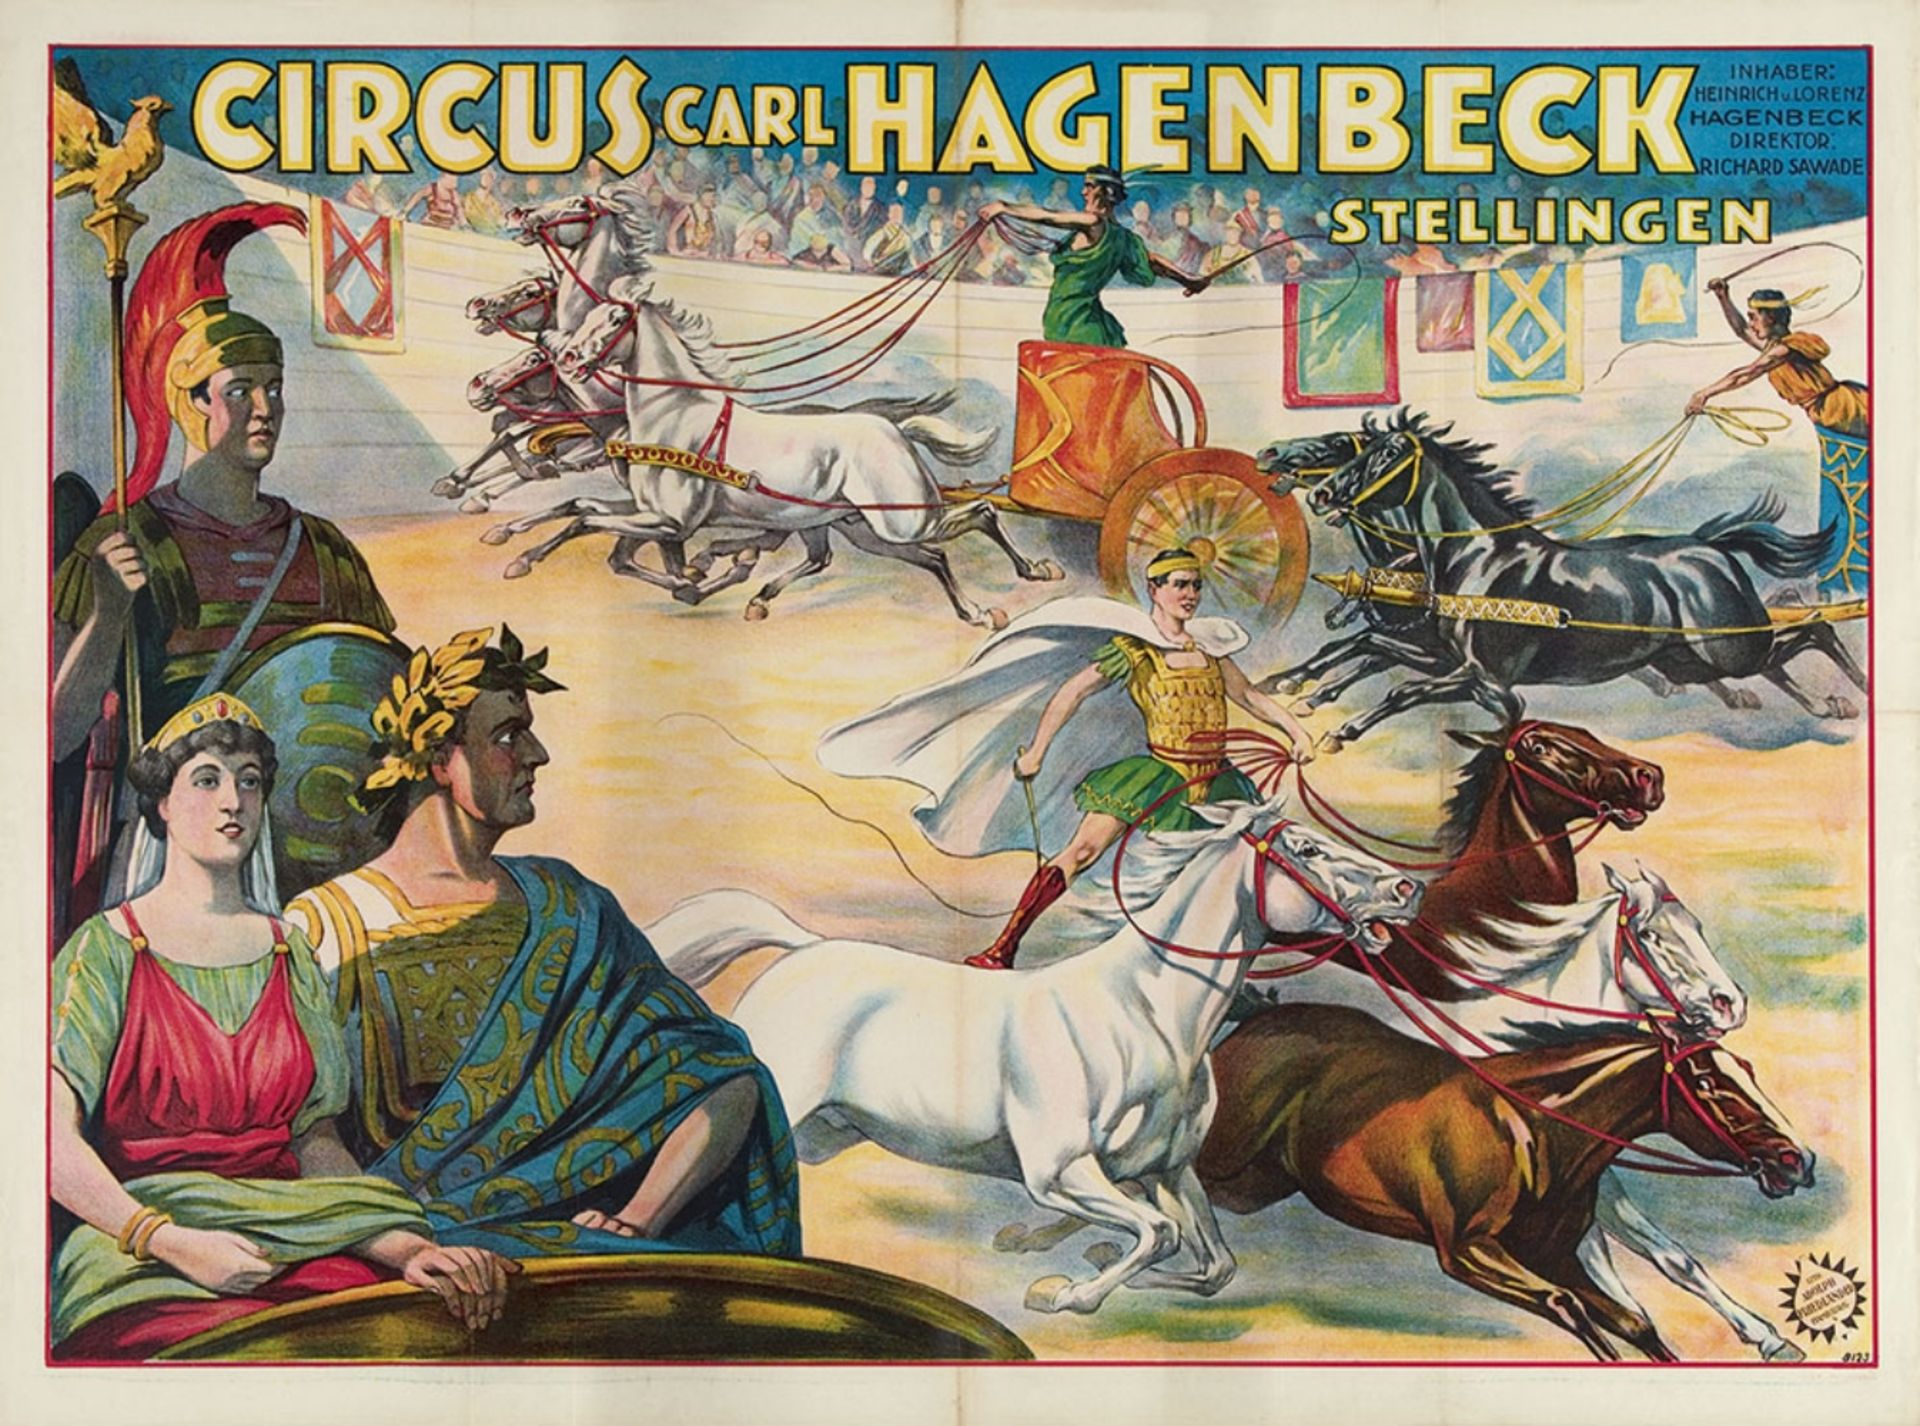 [Roman theatre] Circus Carl Hagenbeck